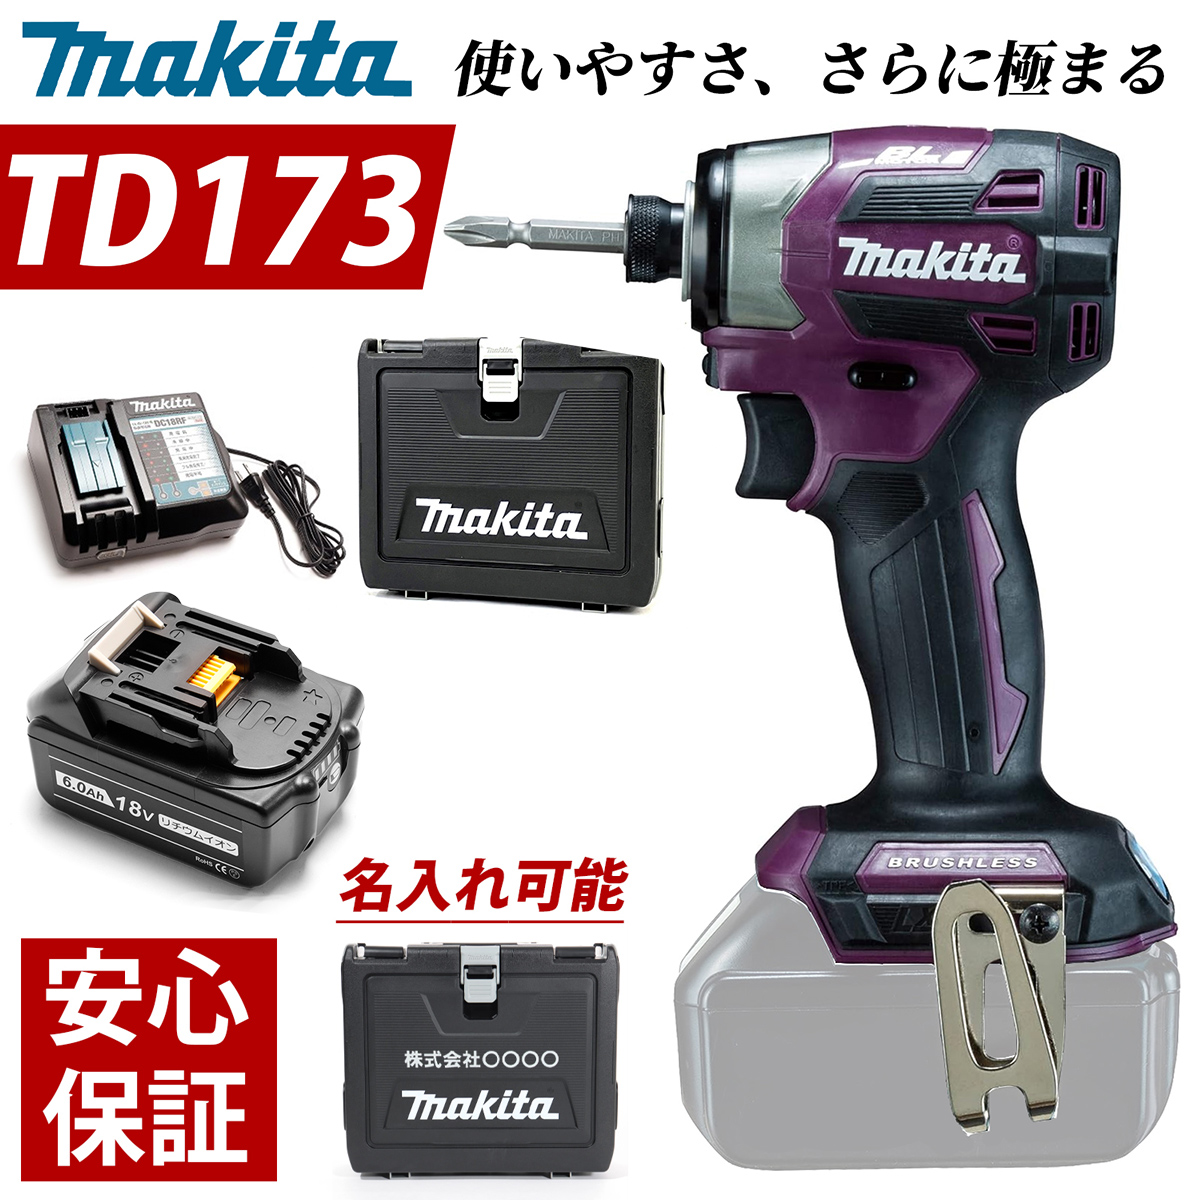 マキタ インパクトドライバー 18V TD173DXAP フルセット 限定色 